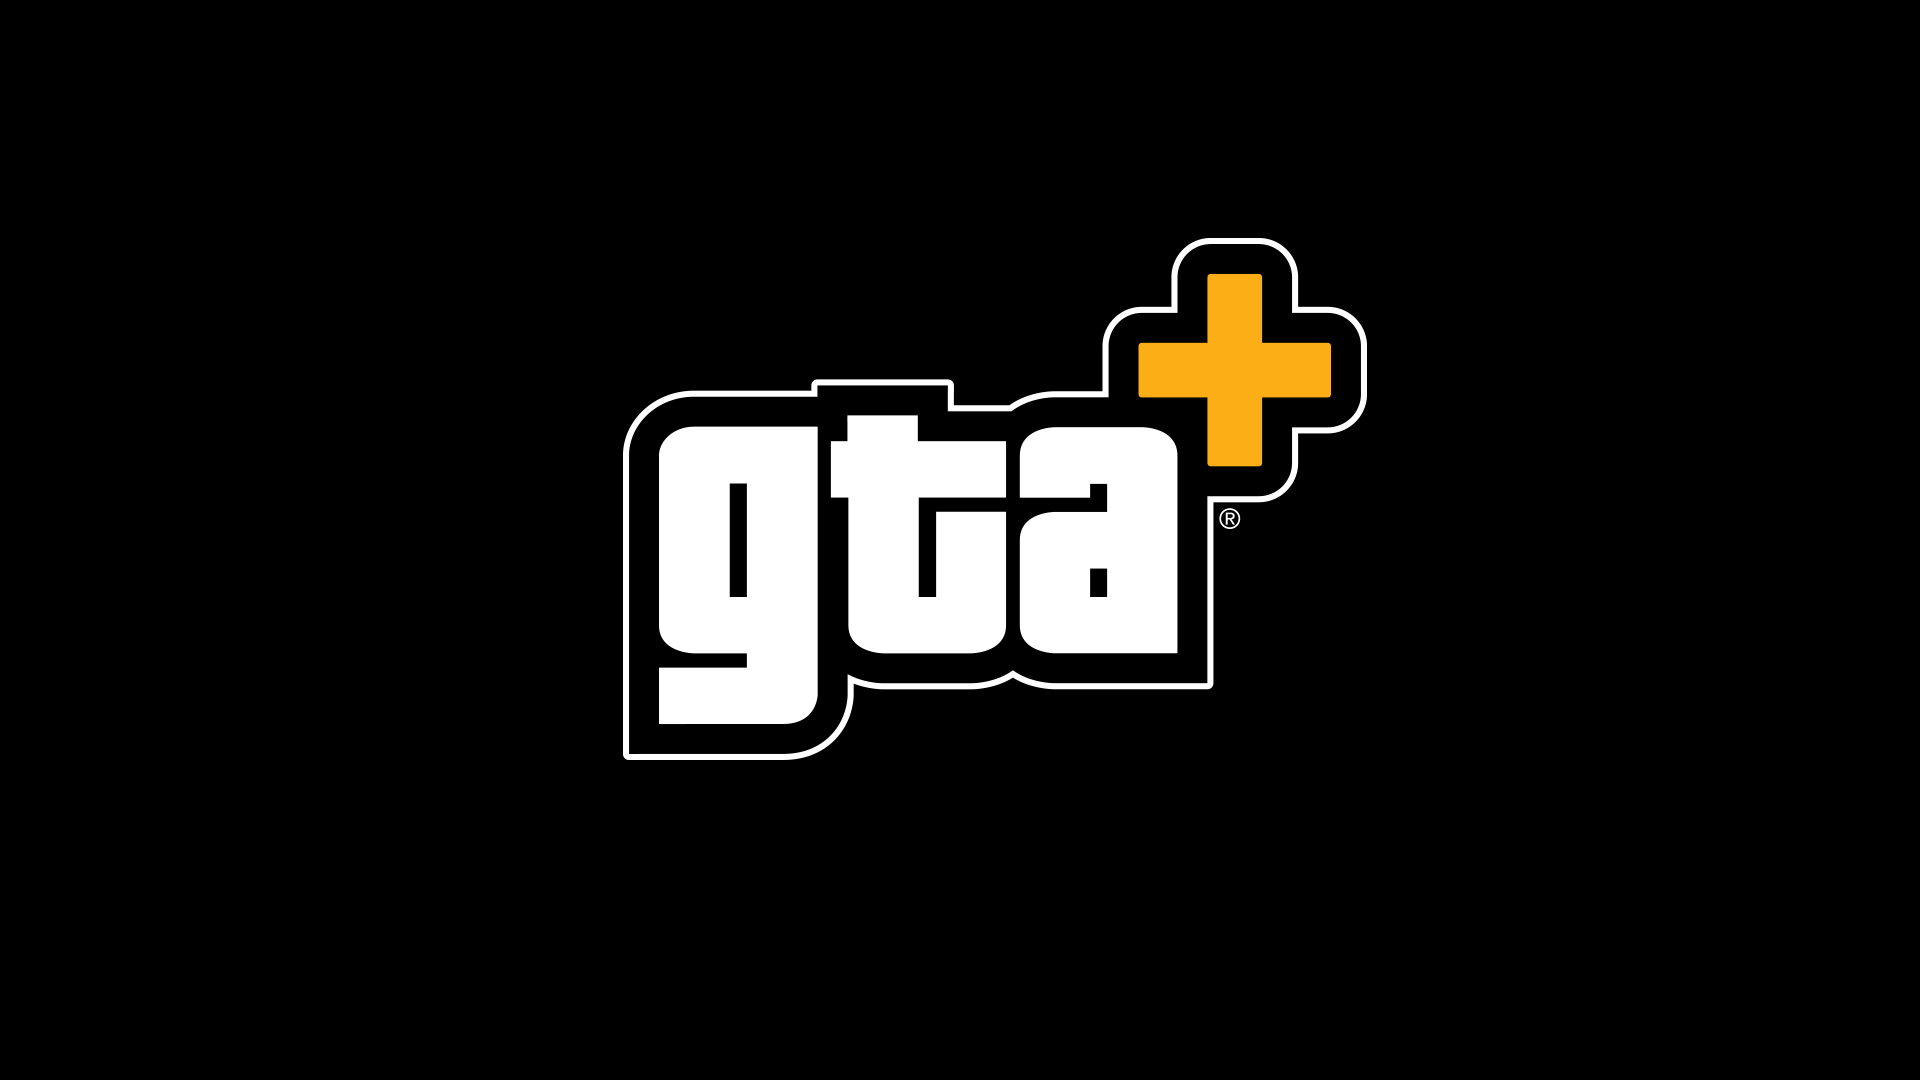 Weitere Informationen zu den neuesten GTA+-Vorteilen finden Sie unter https://rockstargames.com/gtaplus